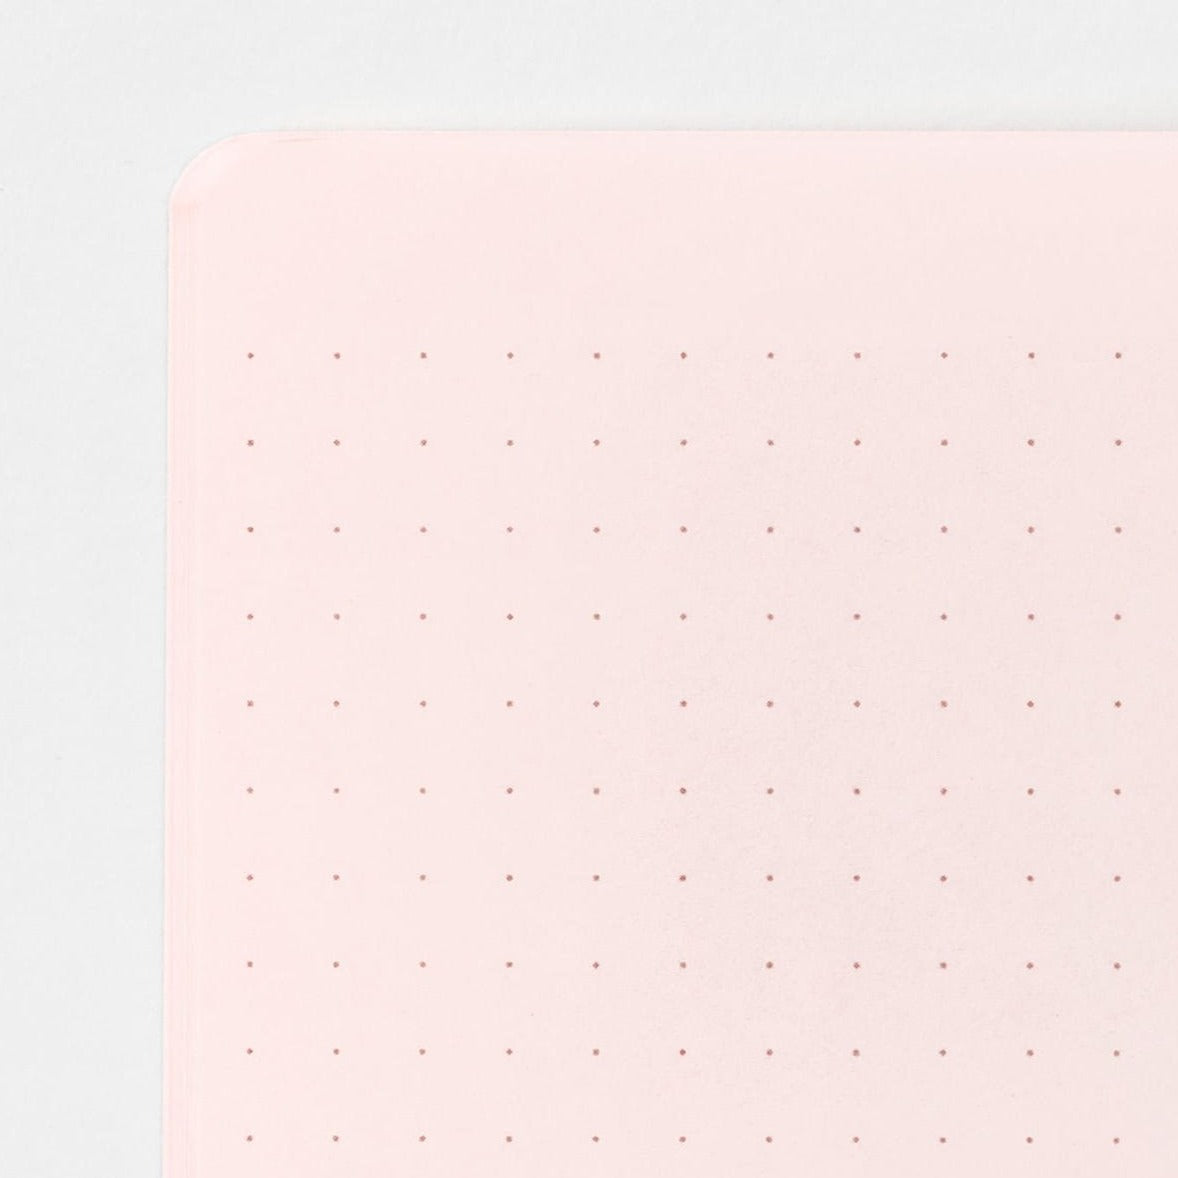 A5 Pink Dot Grid Notebook